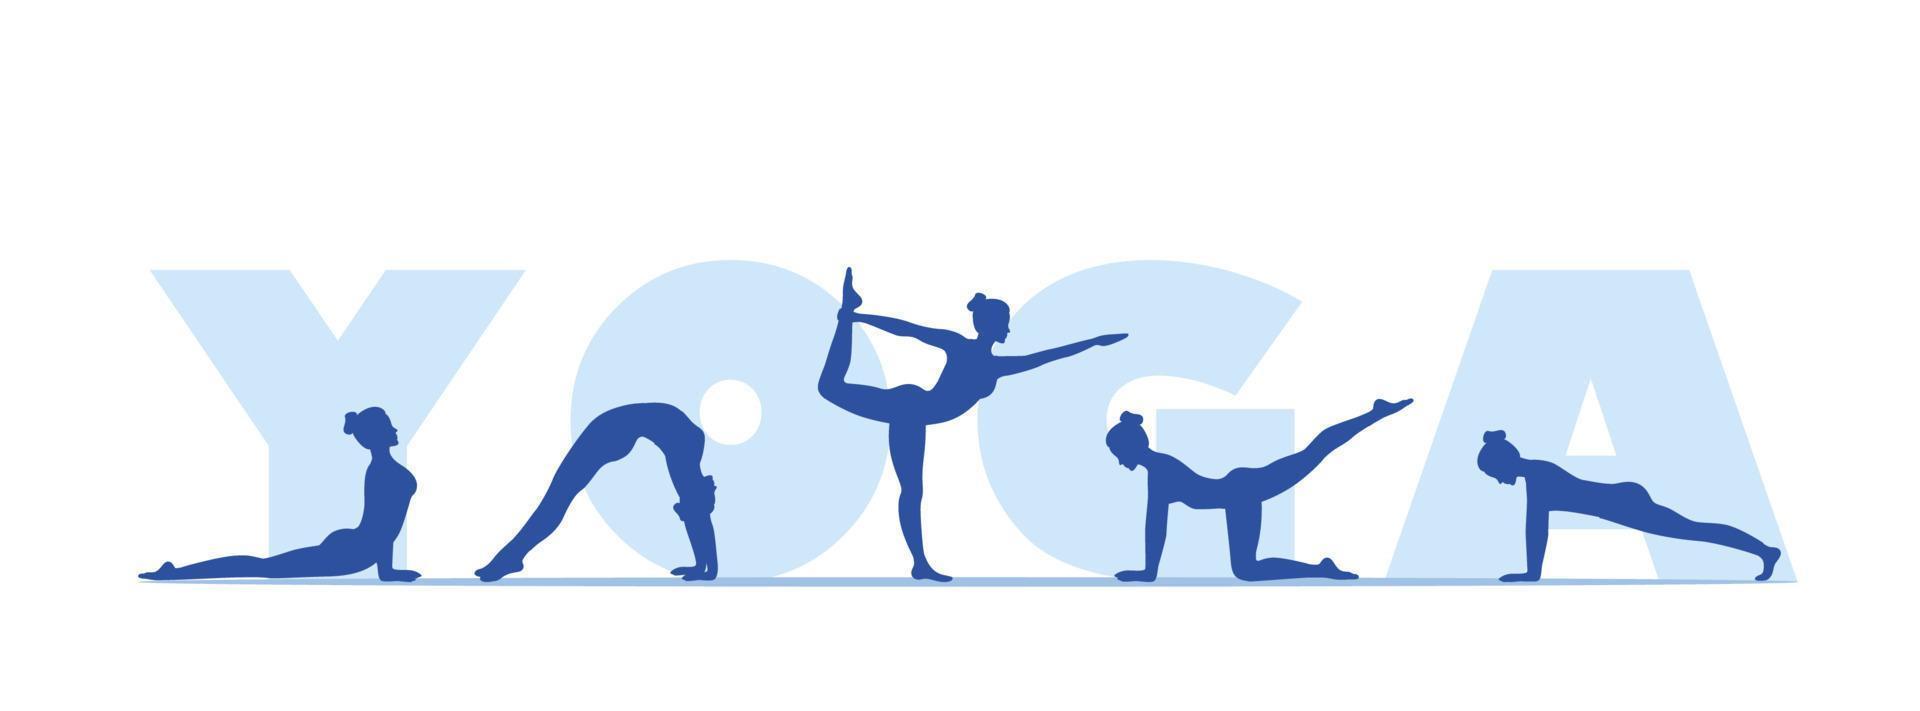 día internacional del yoga. postura corporal de yoga. posturas de yoga entrenamiento de bienestar en ilustración vectorial plana. vector